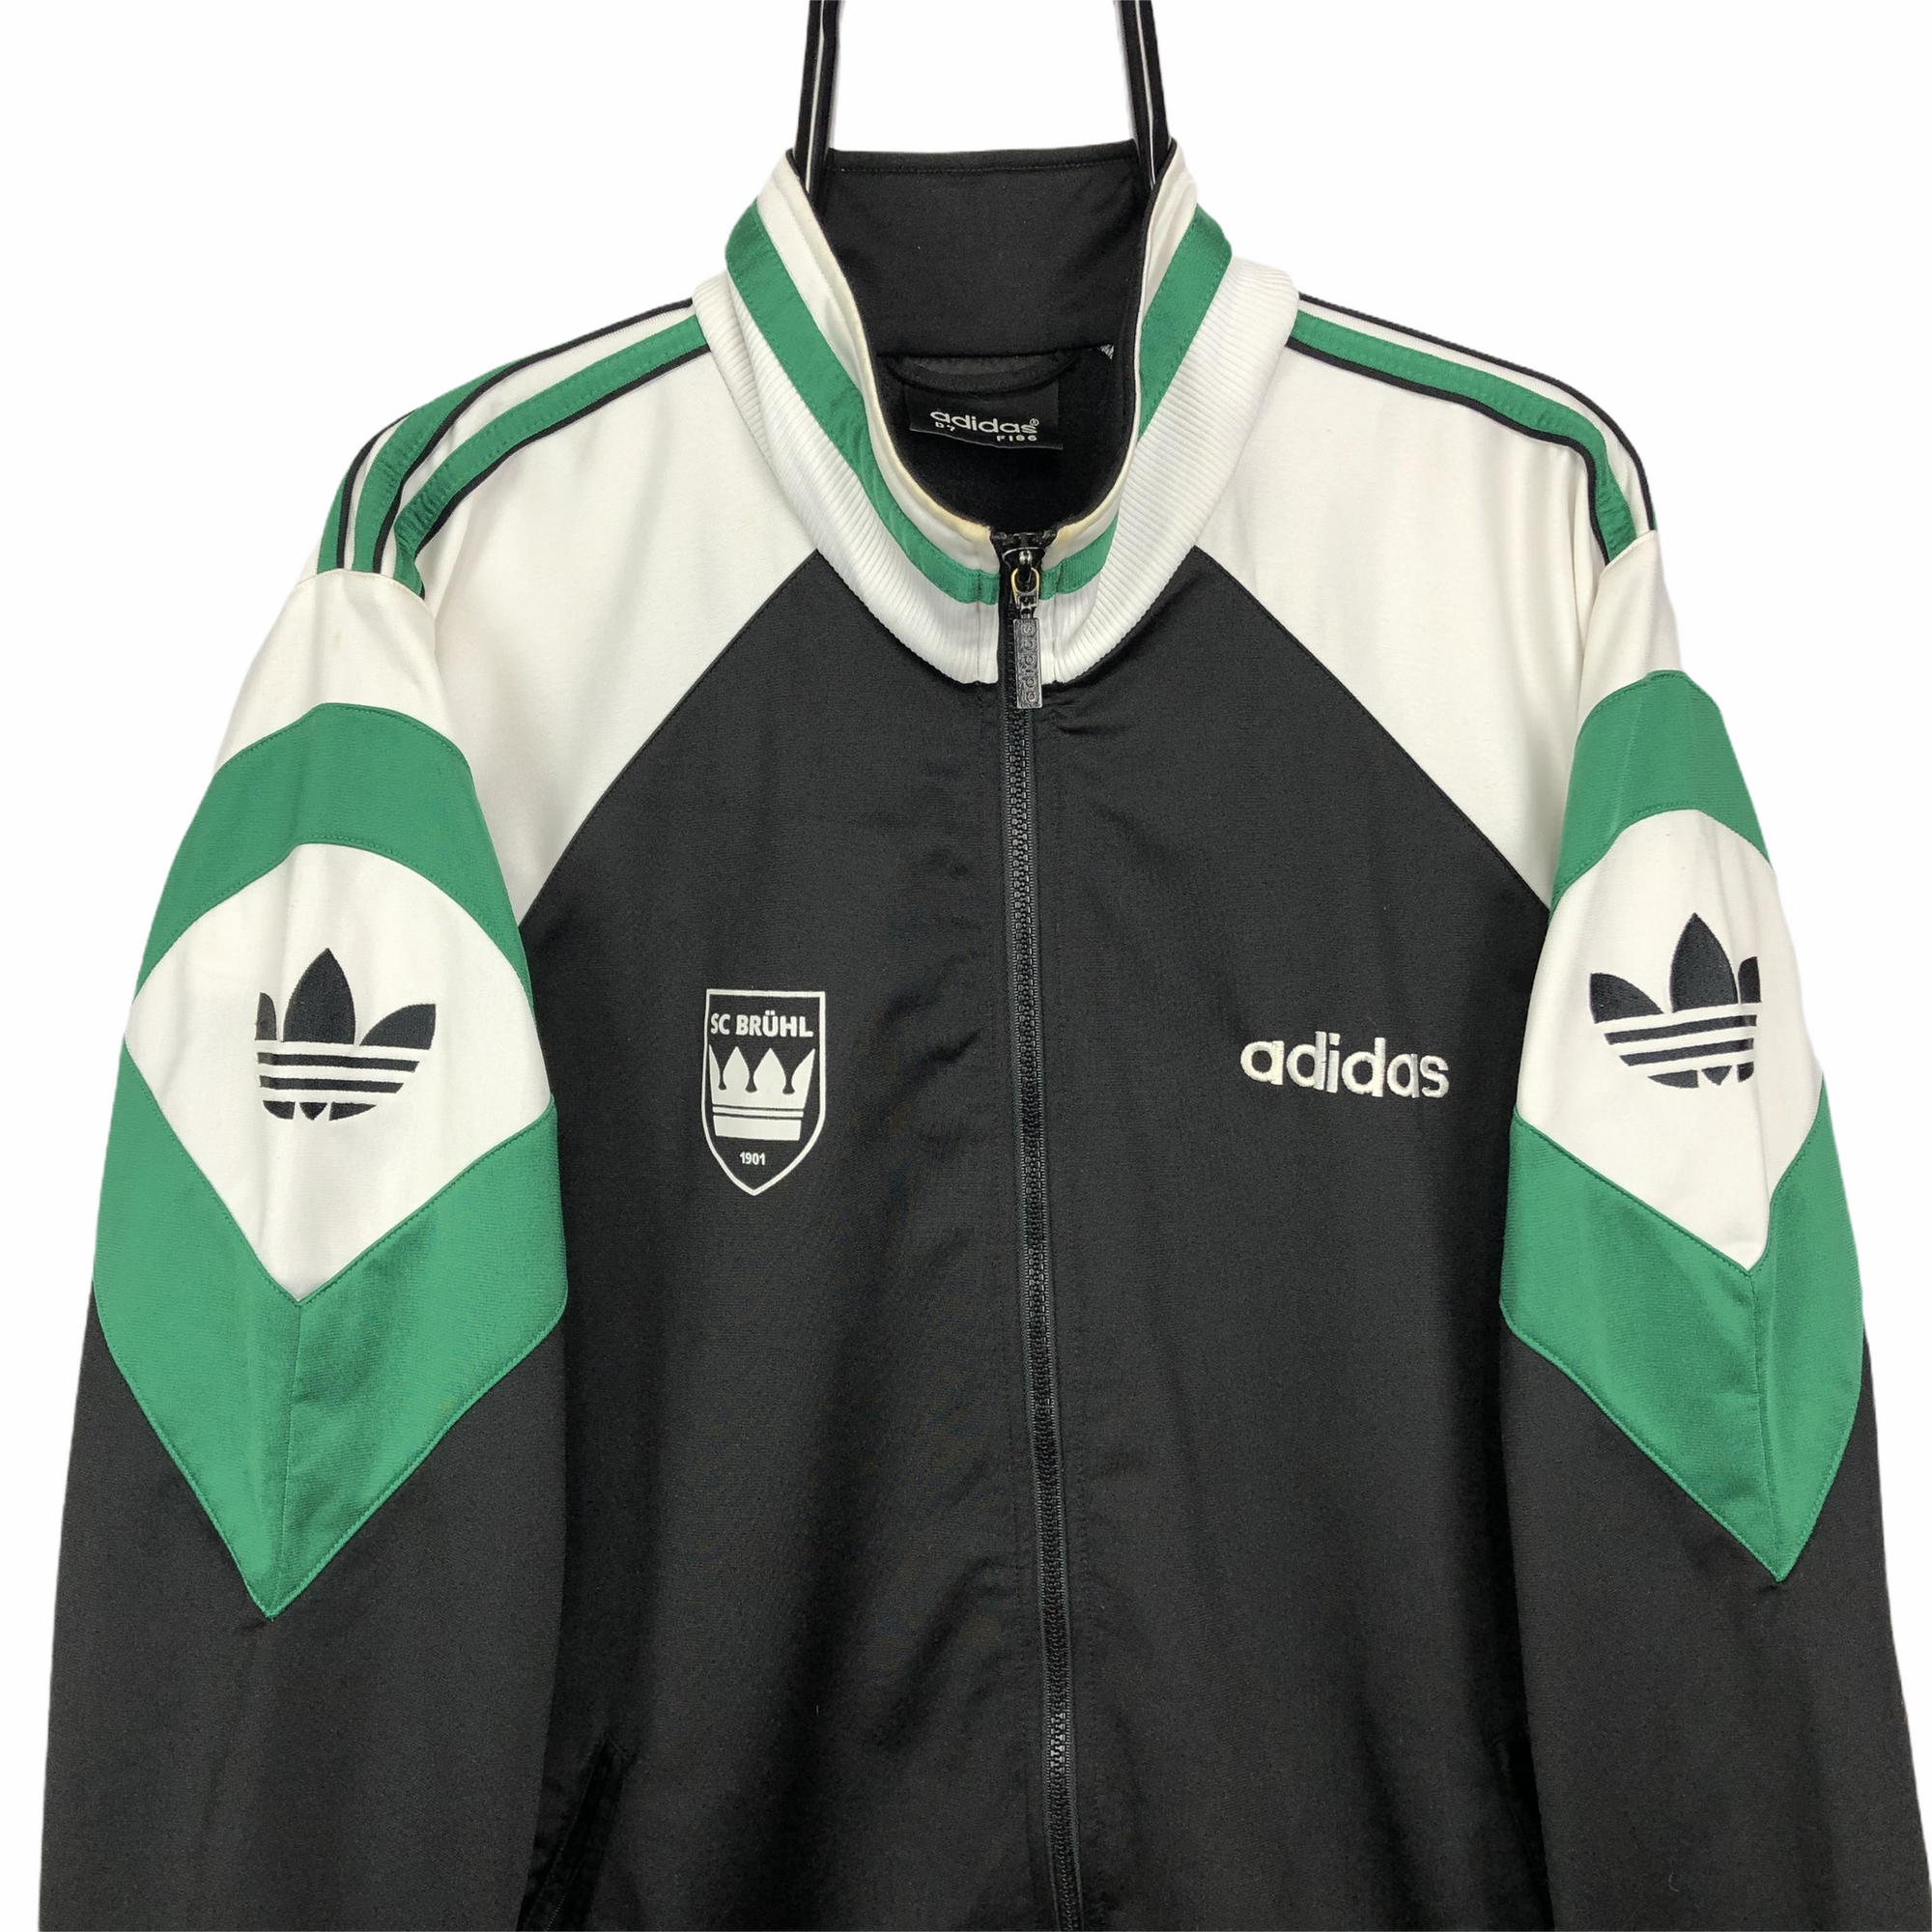 Vintage 80s Adidas Track Jacket - Men's XL/Women's XXL